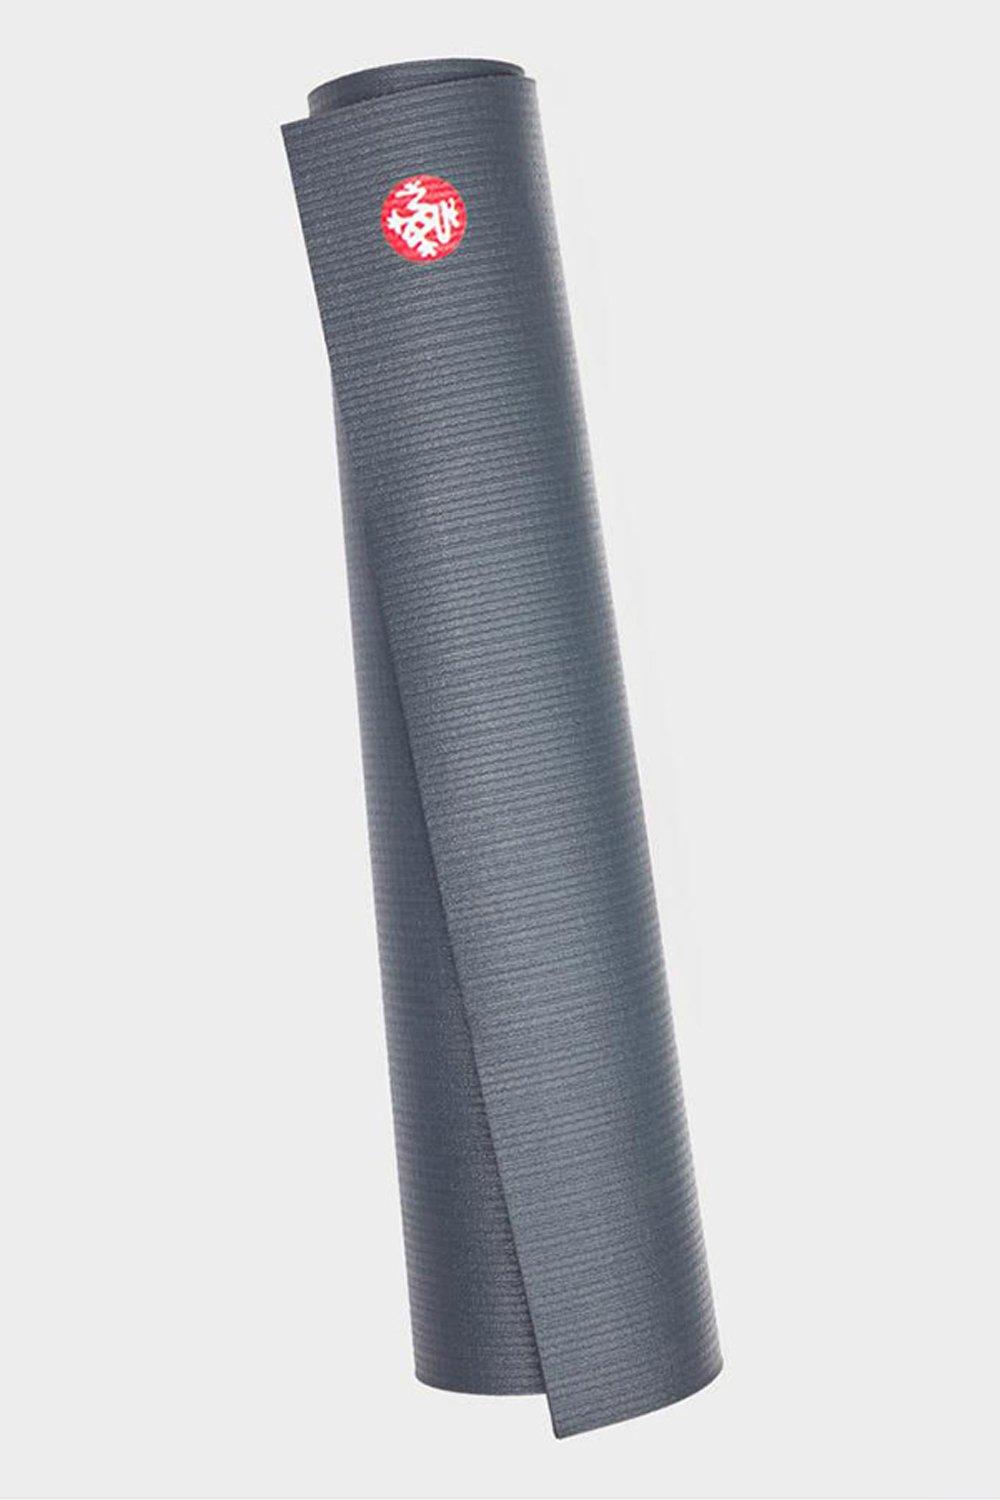 Коврик для йоги PROlite Standard 71 дюйм, 4,7 мм Manduka, серый коврик для йоги demix мультицвет